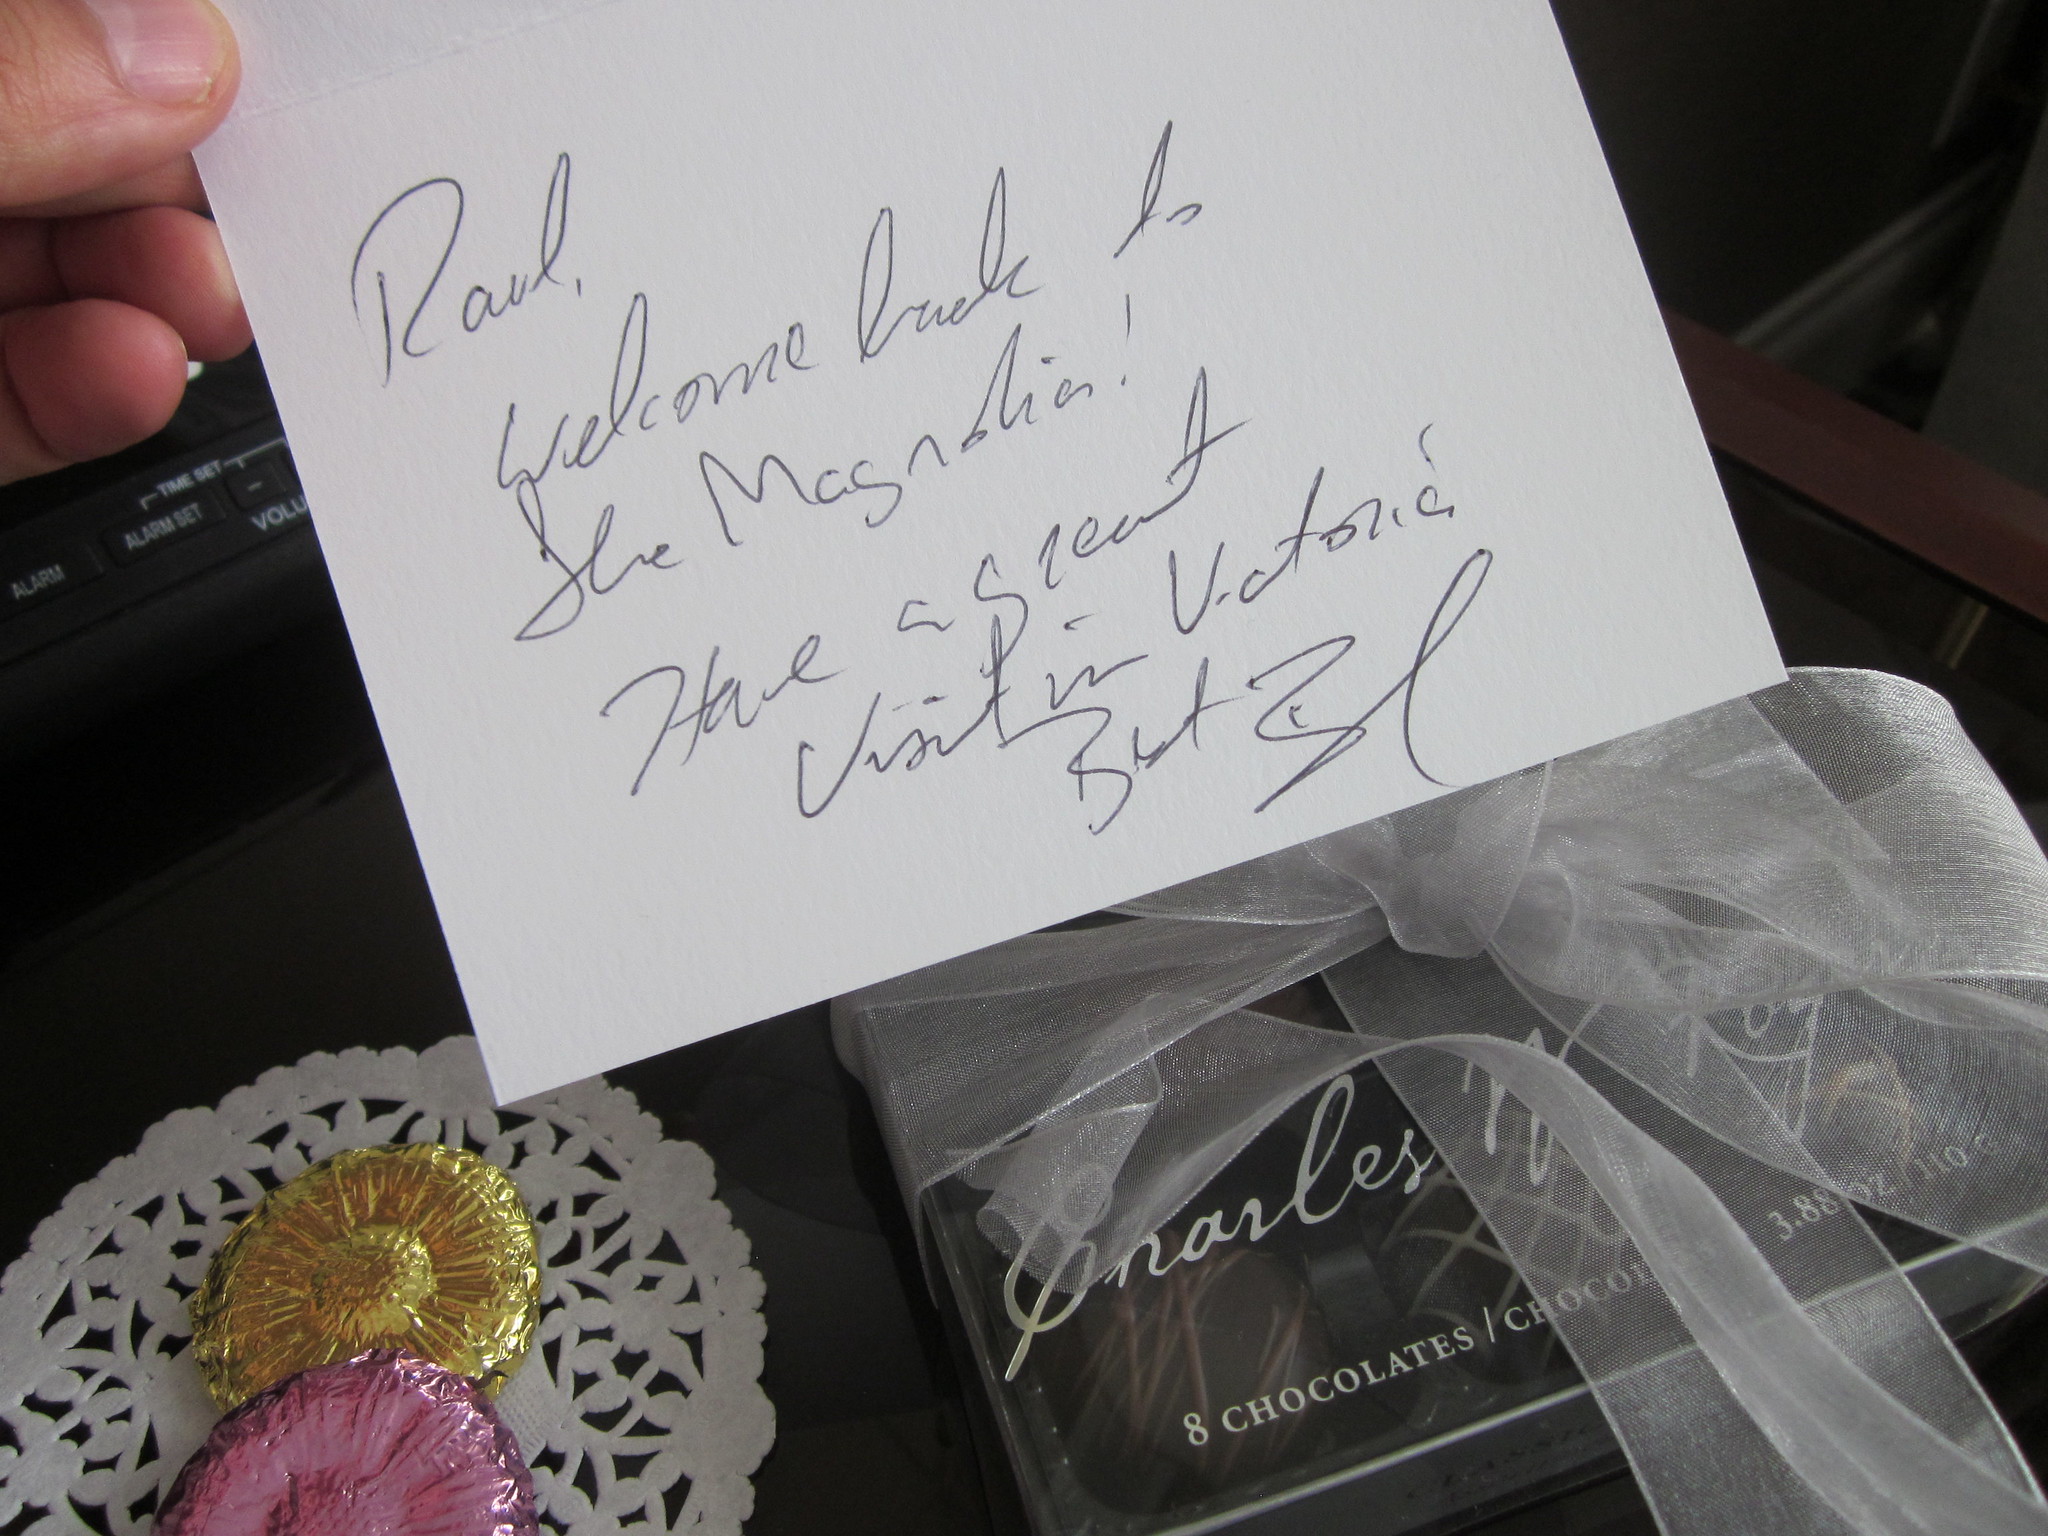 Una nota dice: “Raúl, ¡Bienvenido de nuevo a La Magnolia! Que tengas una gran visita en Victoria.”